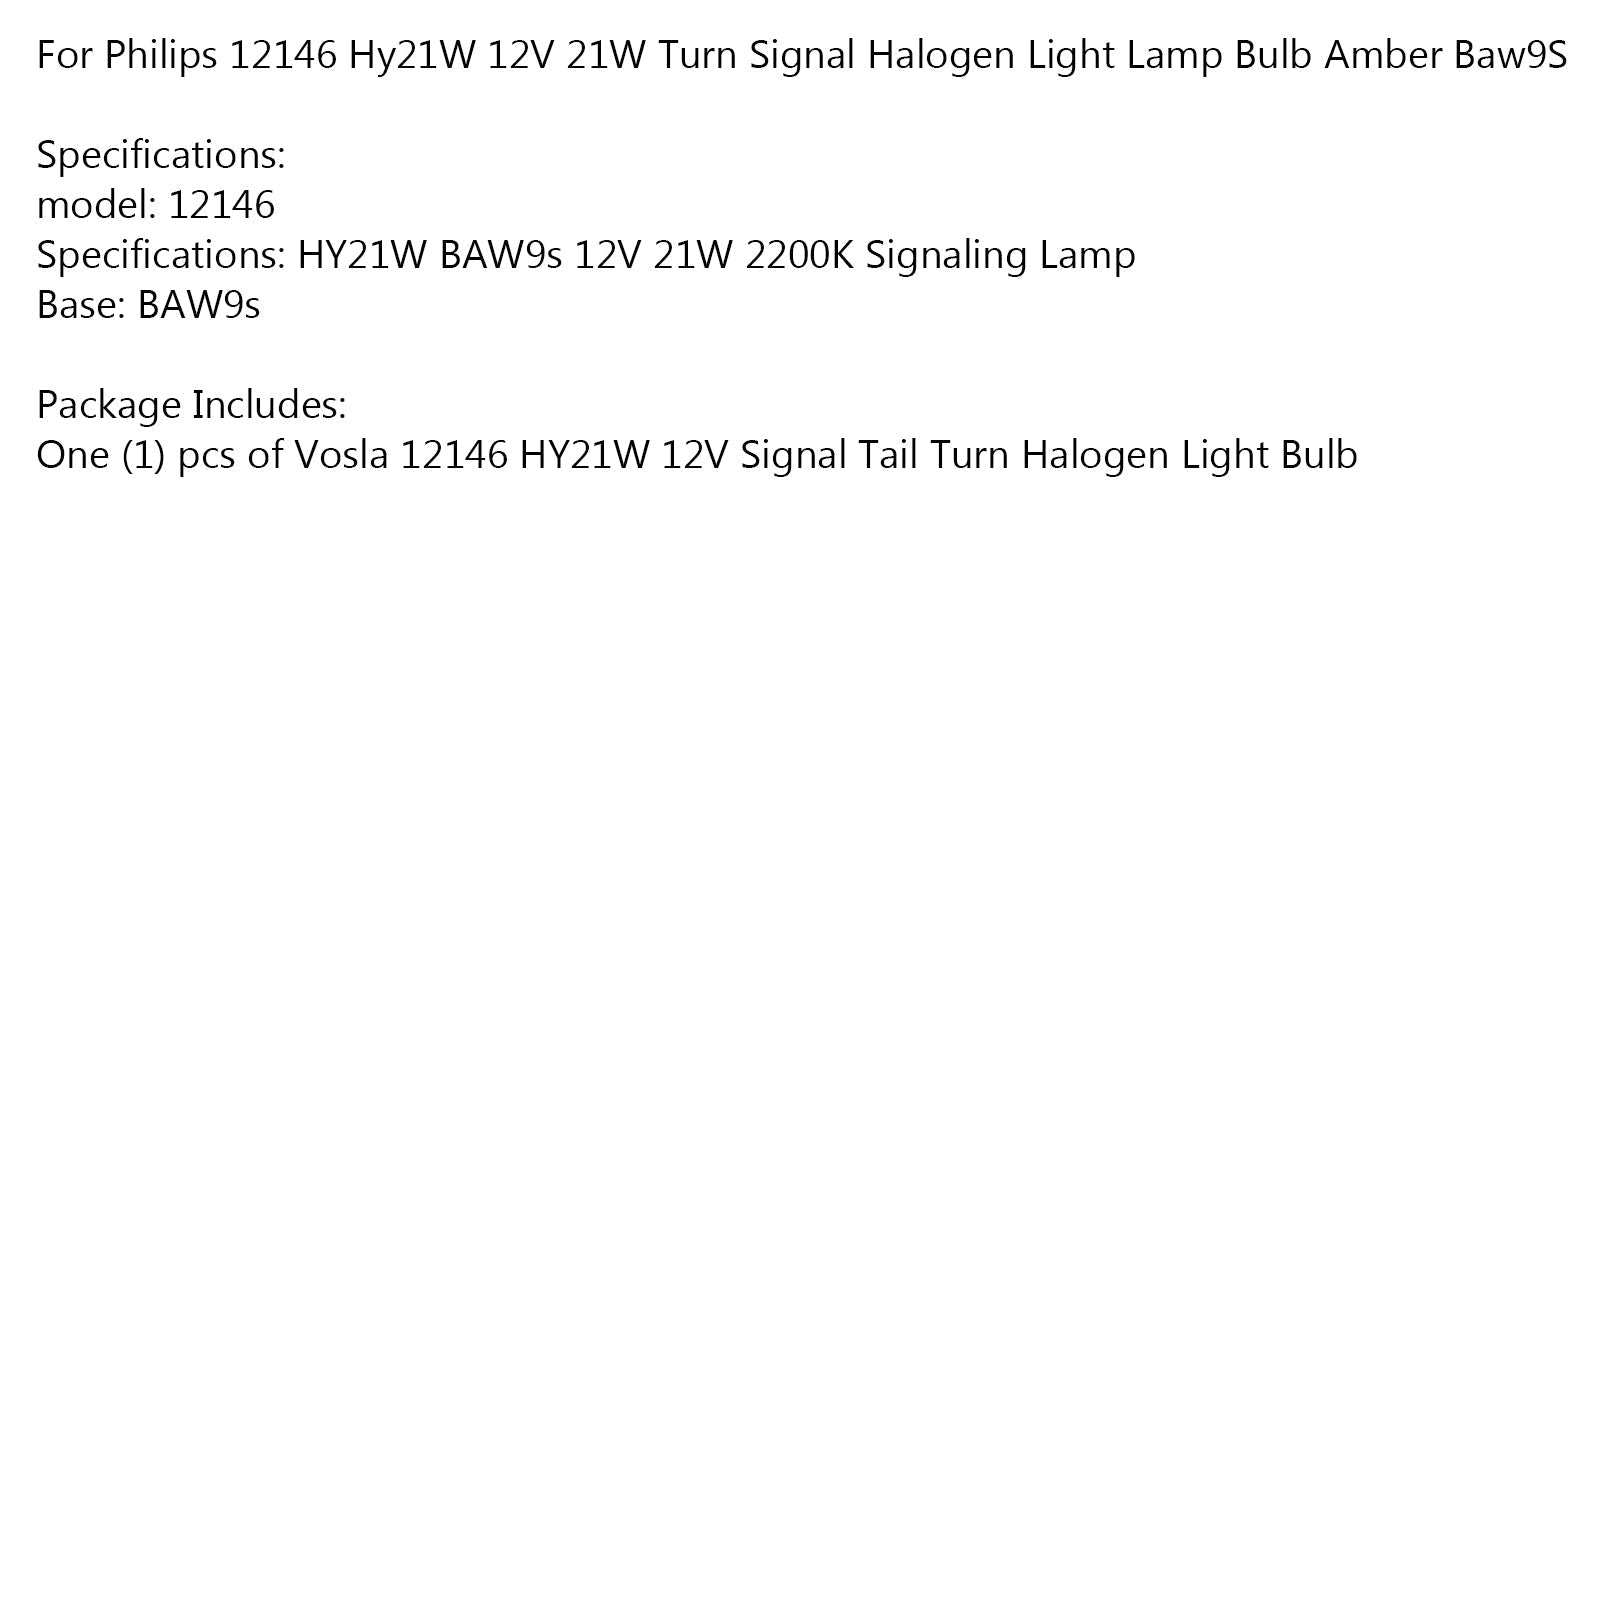 Pour Philips 12146 Hy21W 12V 21W, ampoule halogène orange clignotante Baw9S générique.